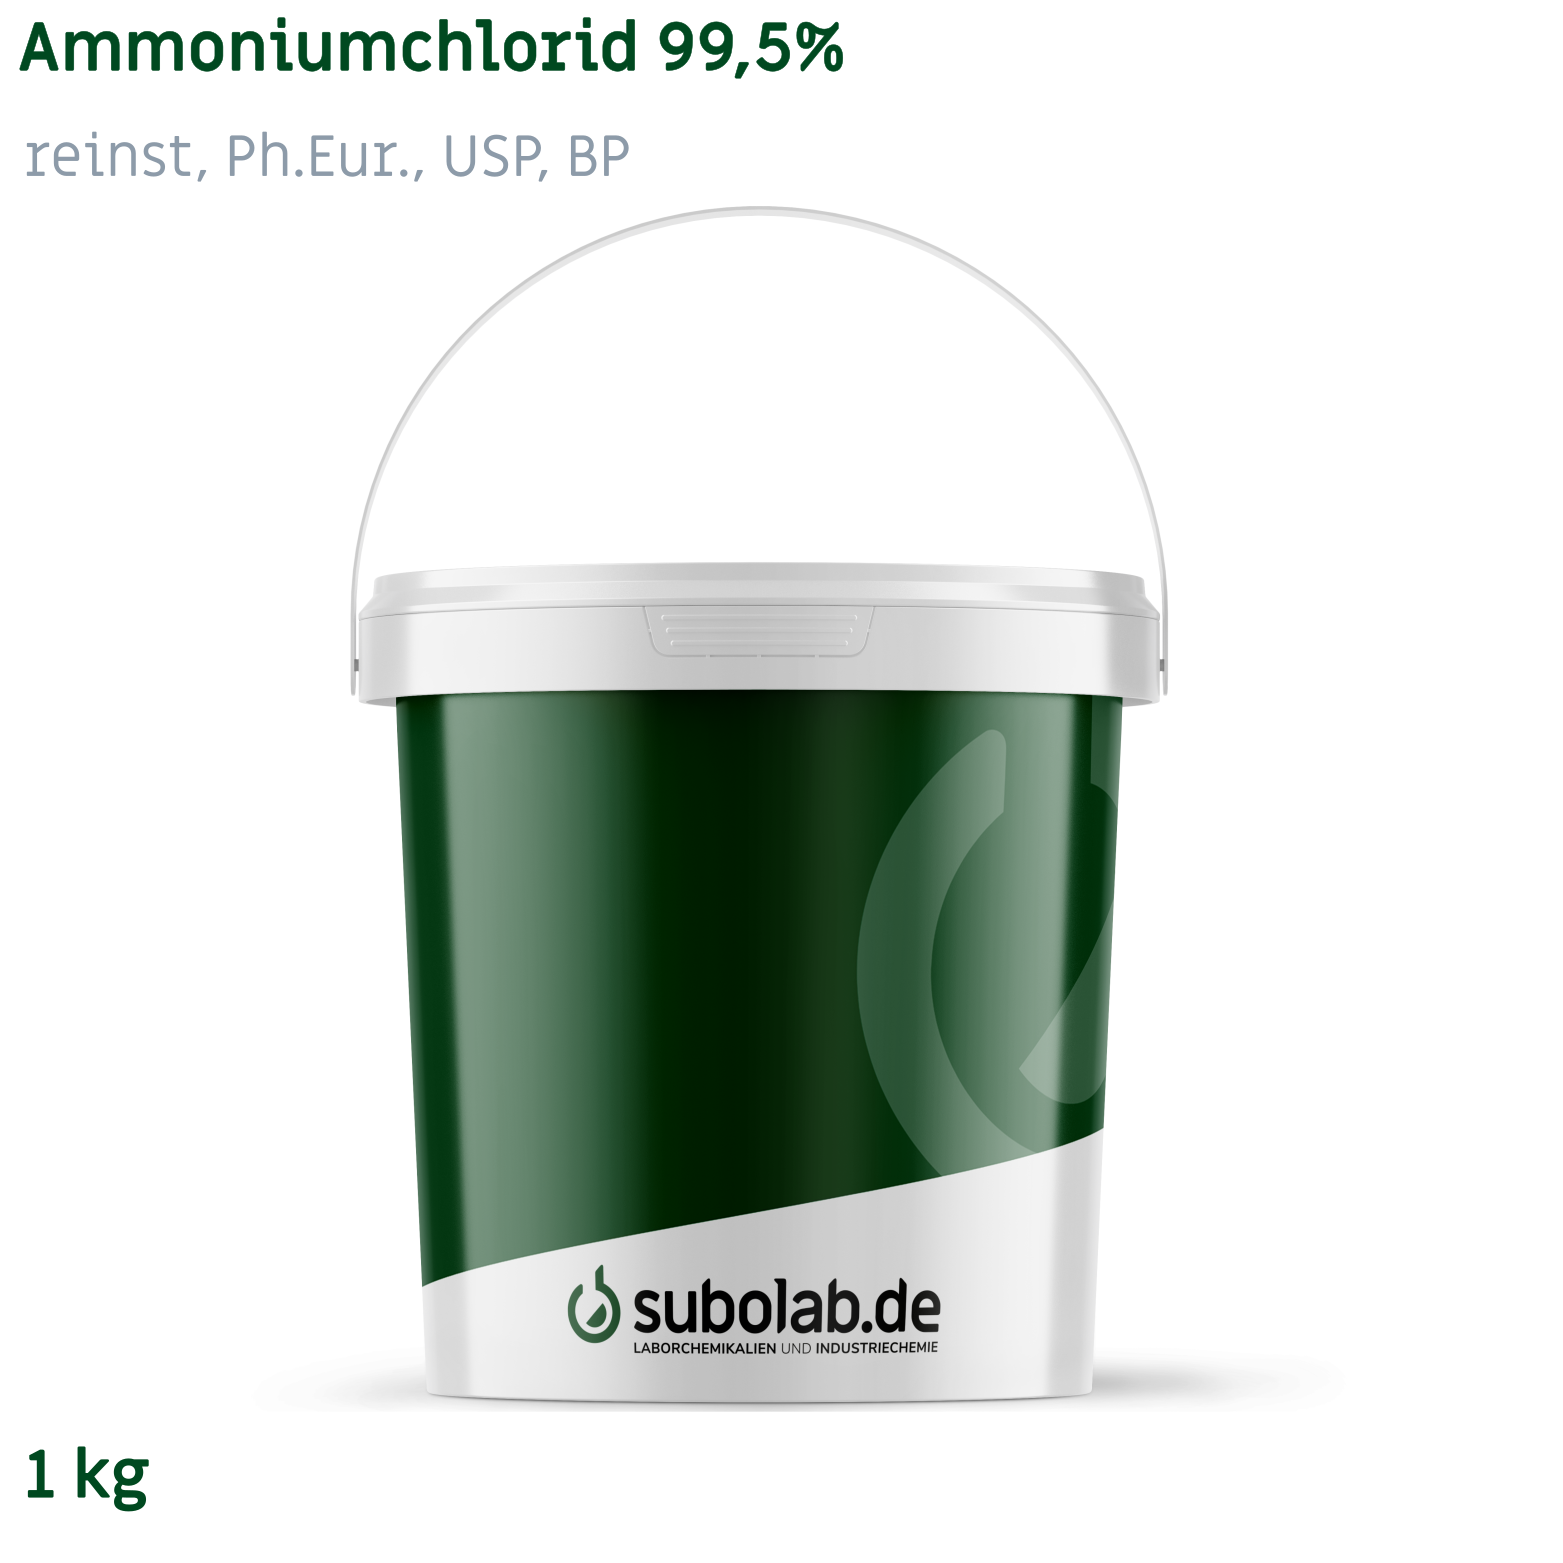 Bild von Ammoniumchlorid 99,5% reinst, Ph.Eur., USP, BP (1 kg)